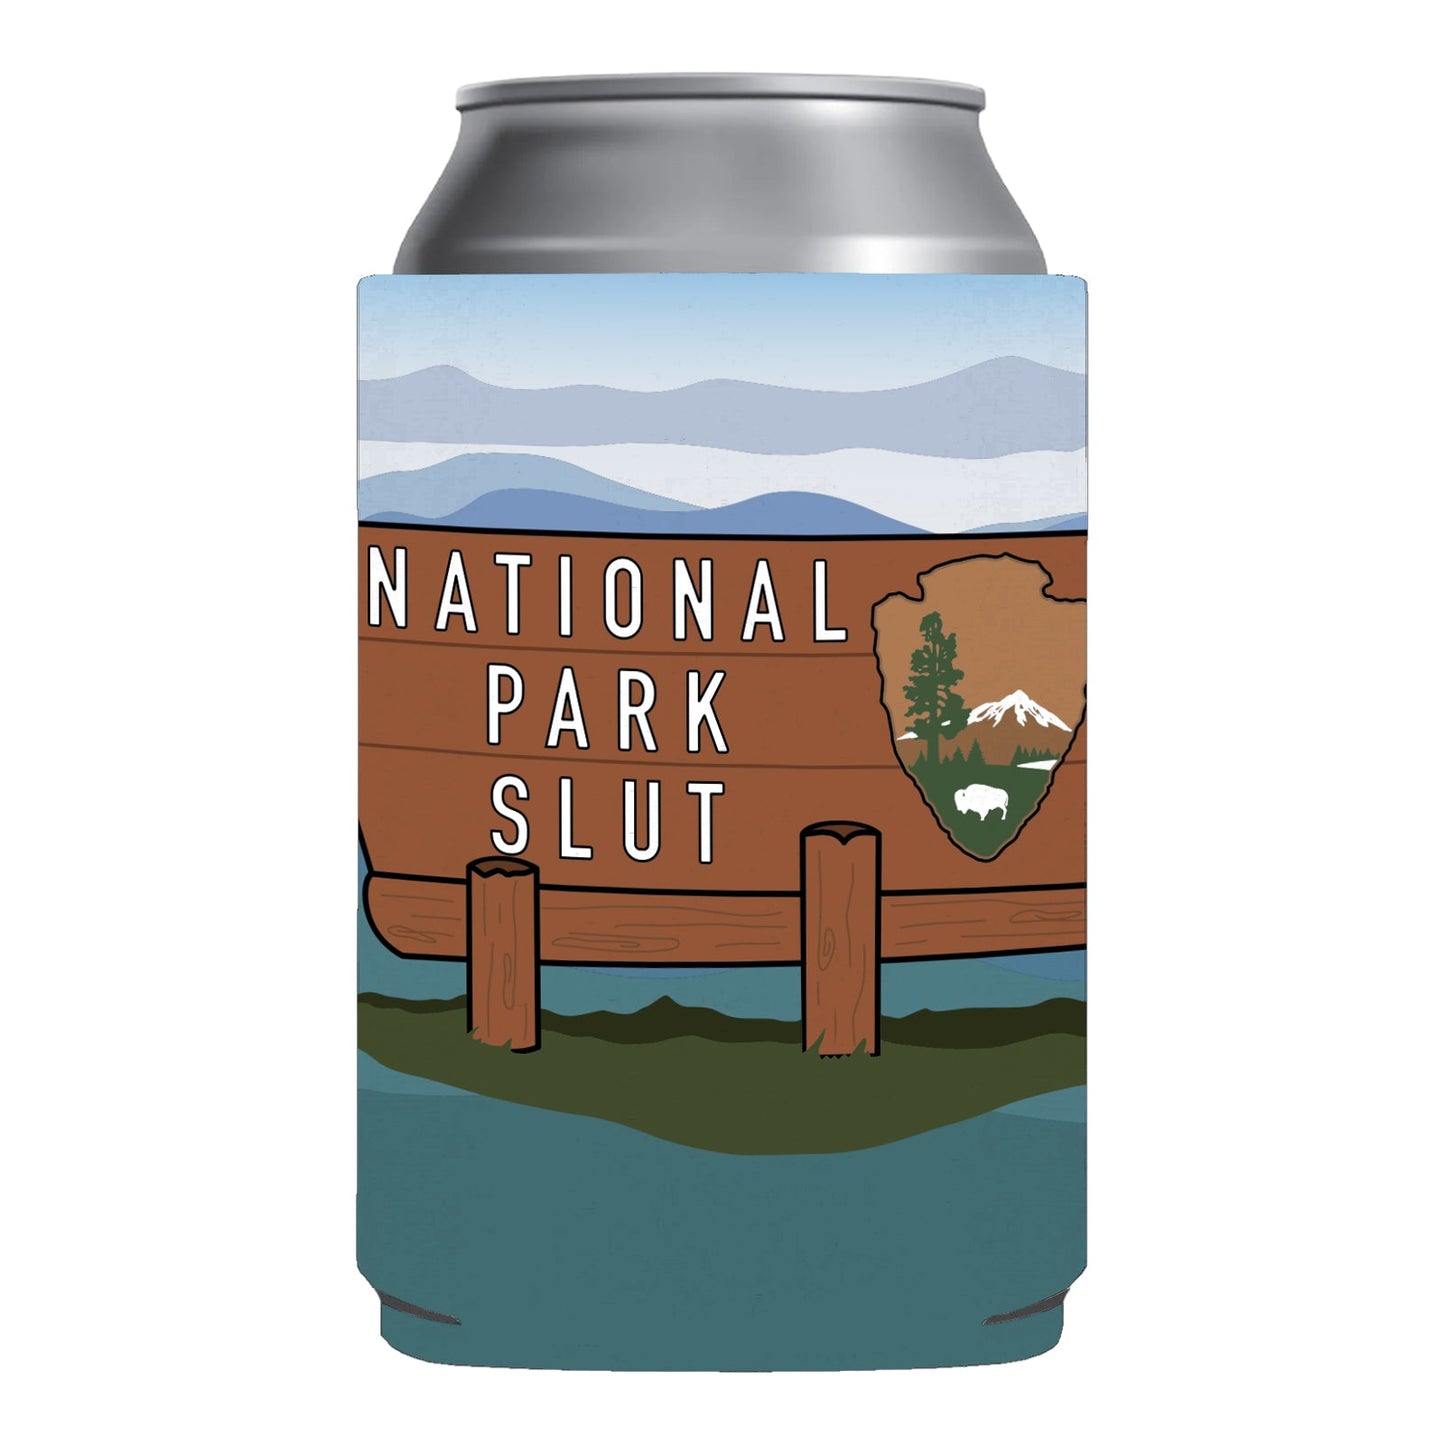 National Park Slut Funny Beer Can Cooler Holder Sleeve